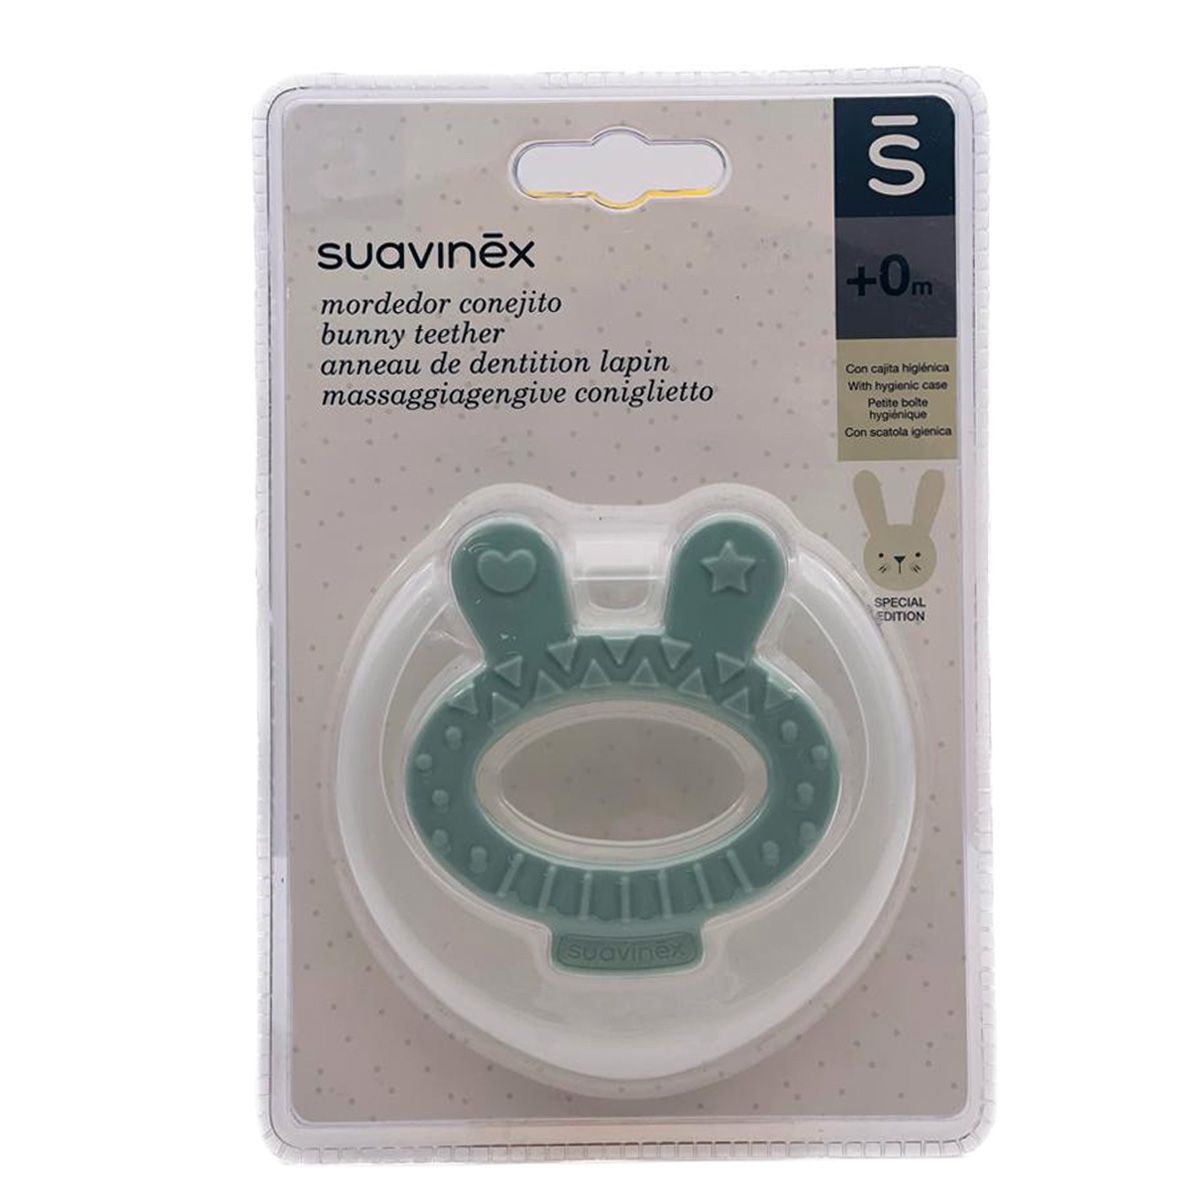 Suavinex mordedor refrigerante +4m Farmacia y Parafarmacia Online